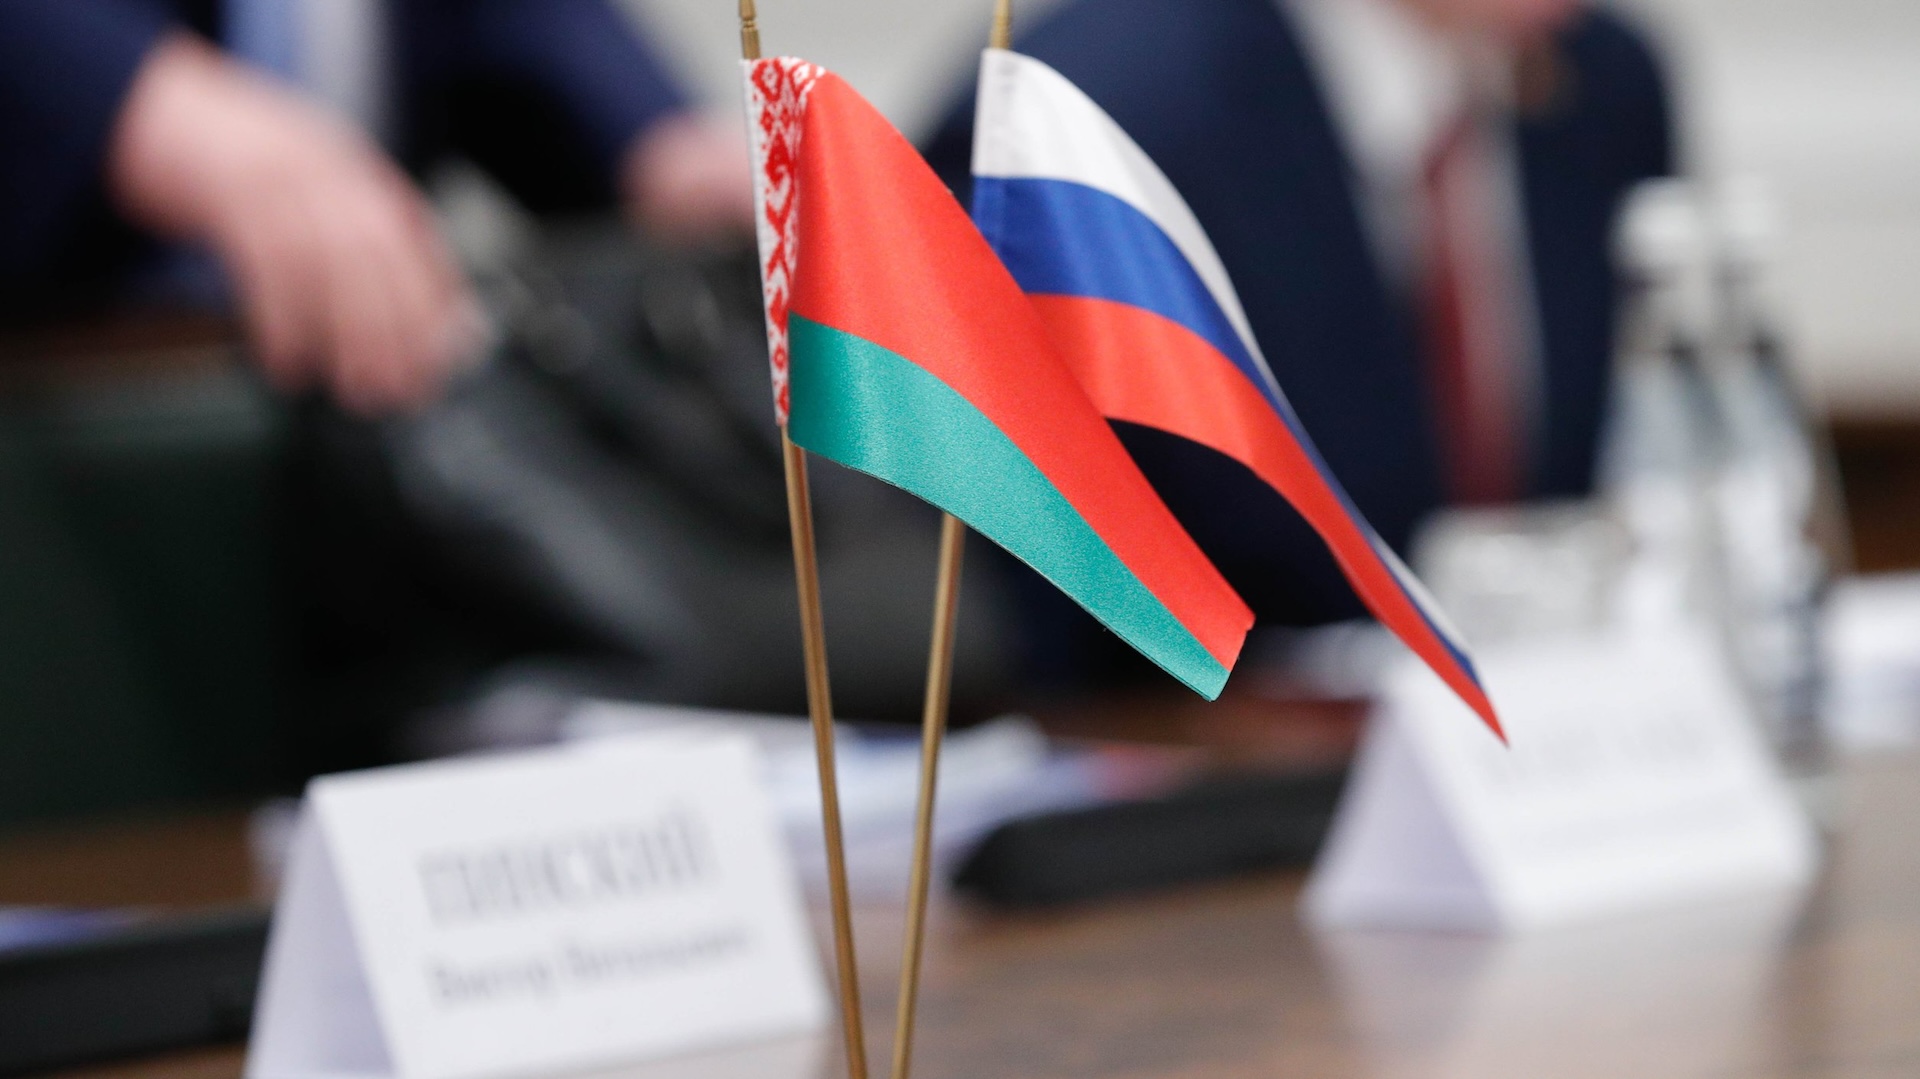 Беларусь и РФ написали доклад о нарушениях прав человека в разных странах. Угадайте, каких стран там нет